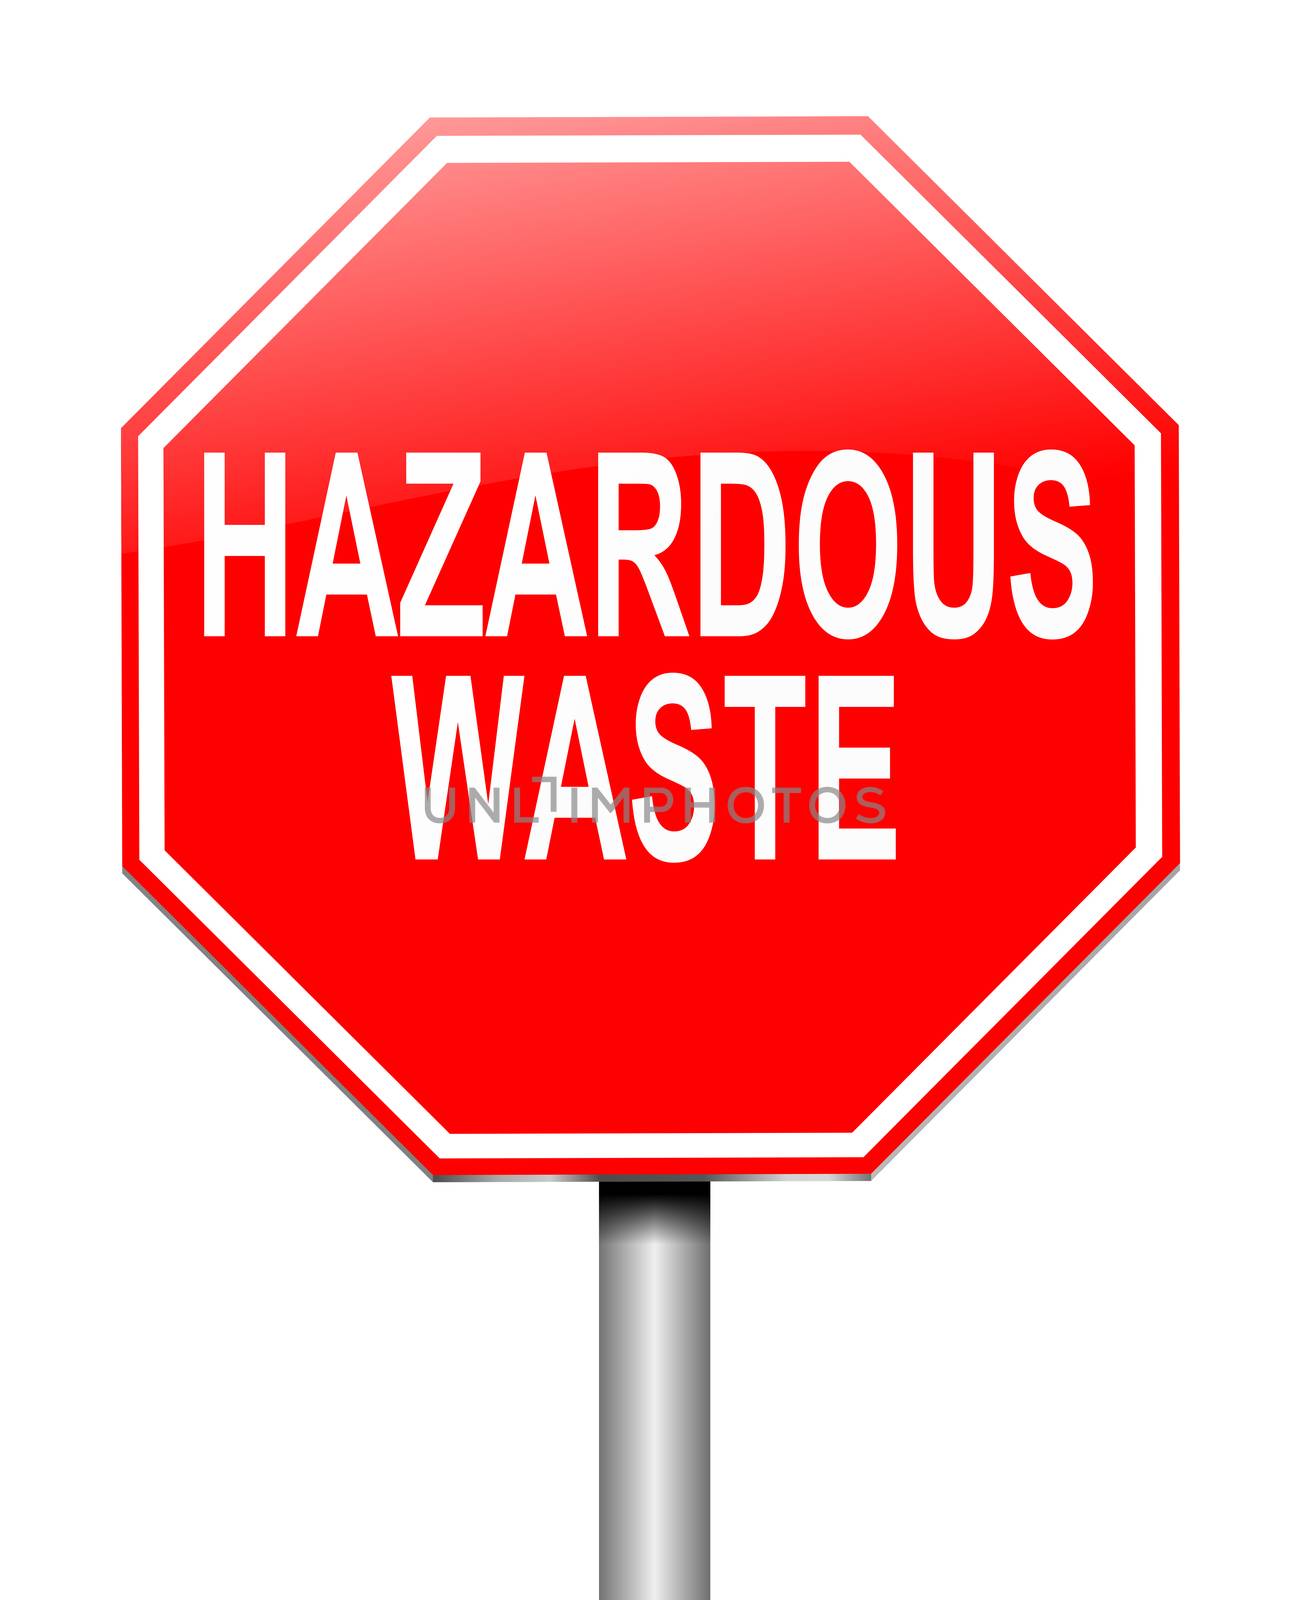 Hazardous waste concept. by 72soul